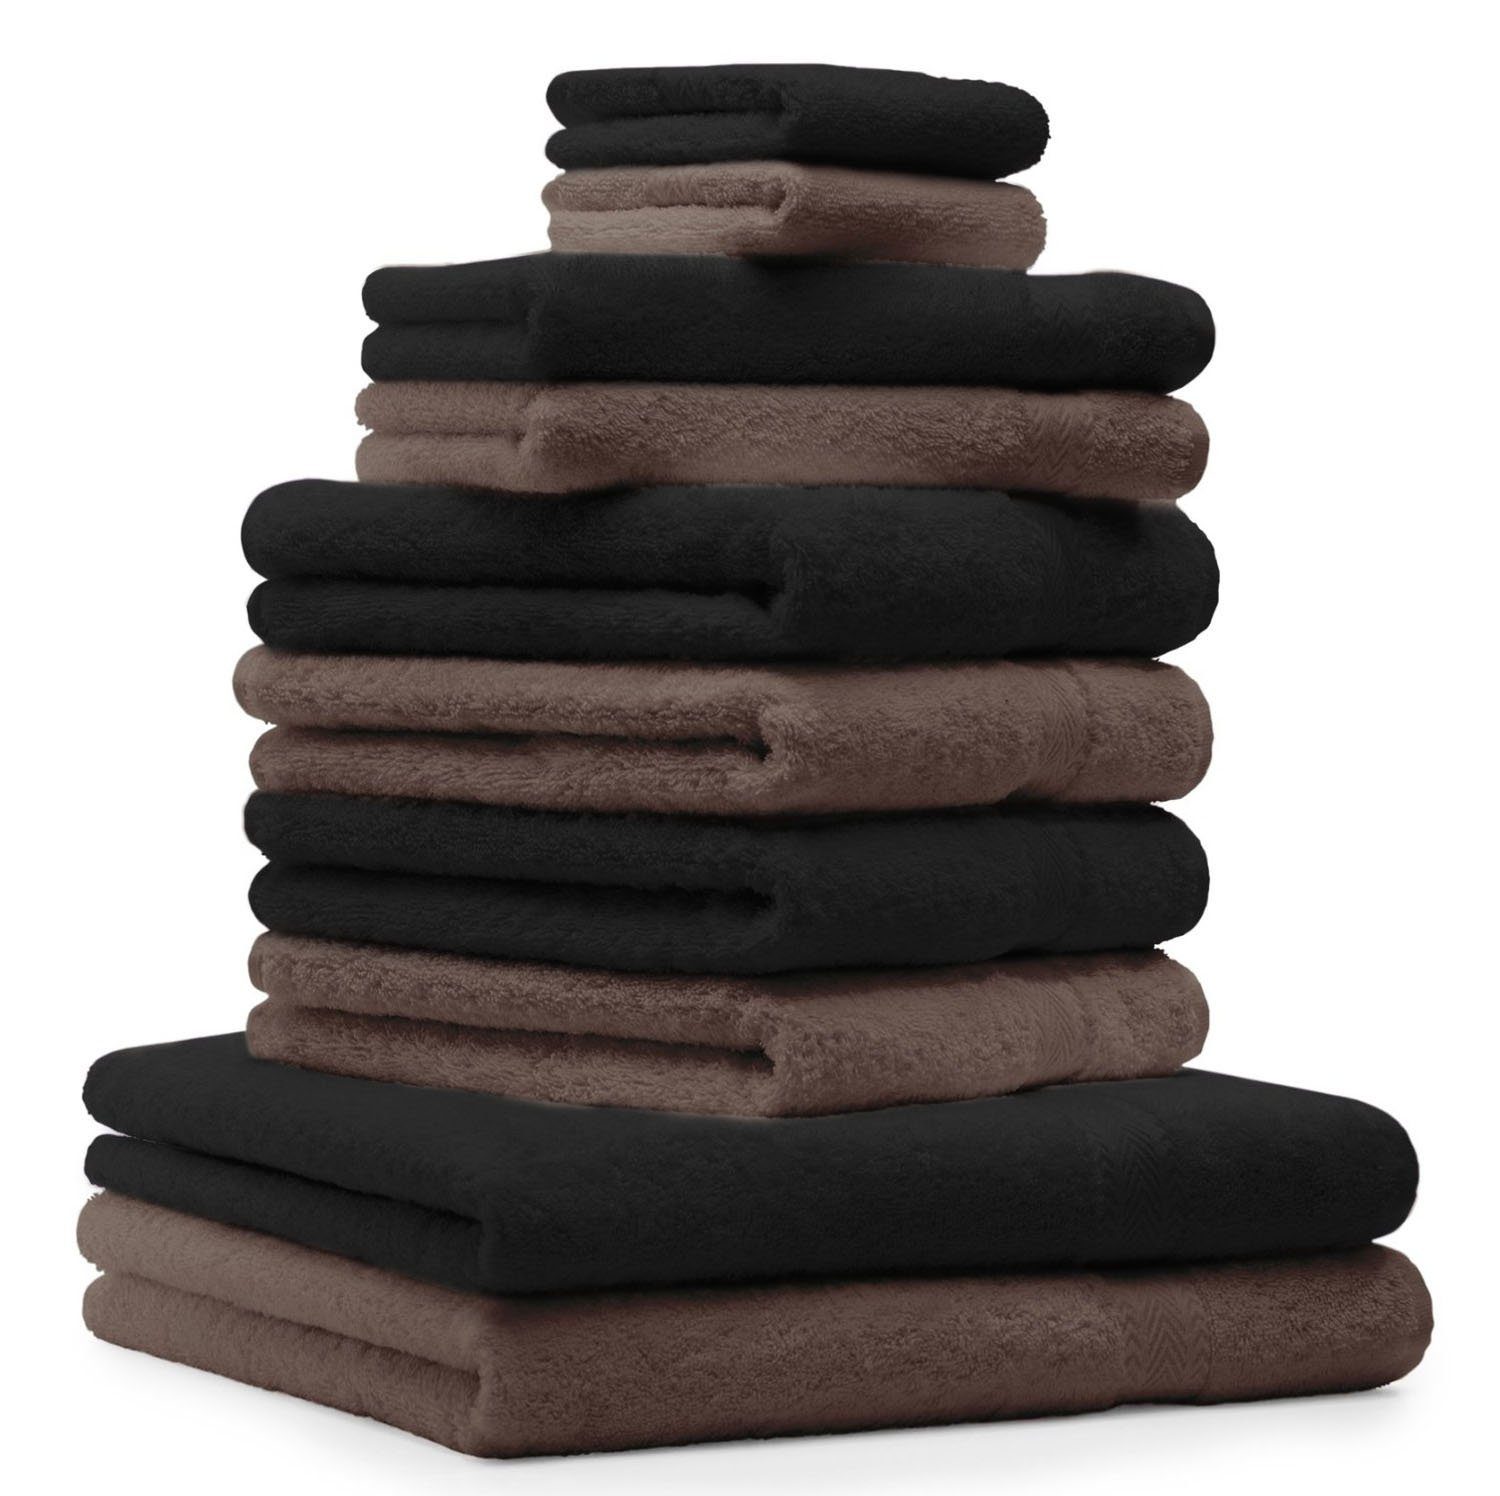 Betz Handtuch Set 10-TLG. Handtuch-Set Premium Farbe Schwarz & Nussbraun, 100% Baumwolle, (10-tlg)